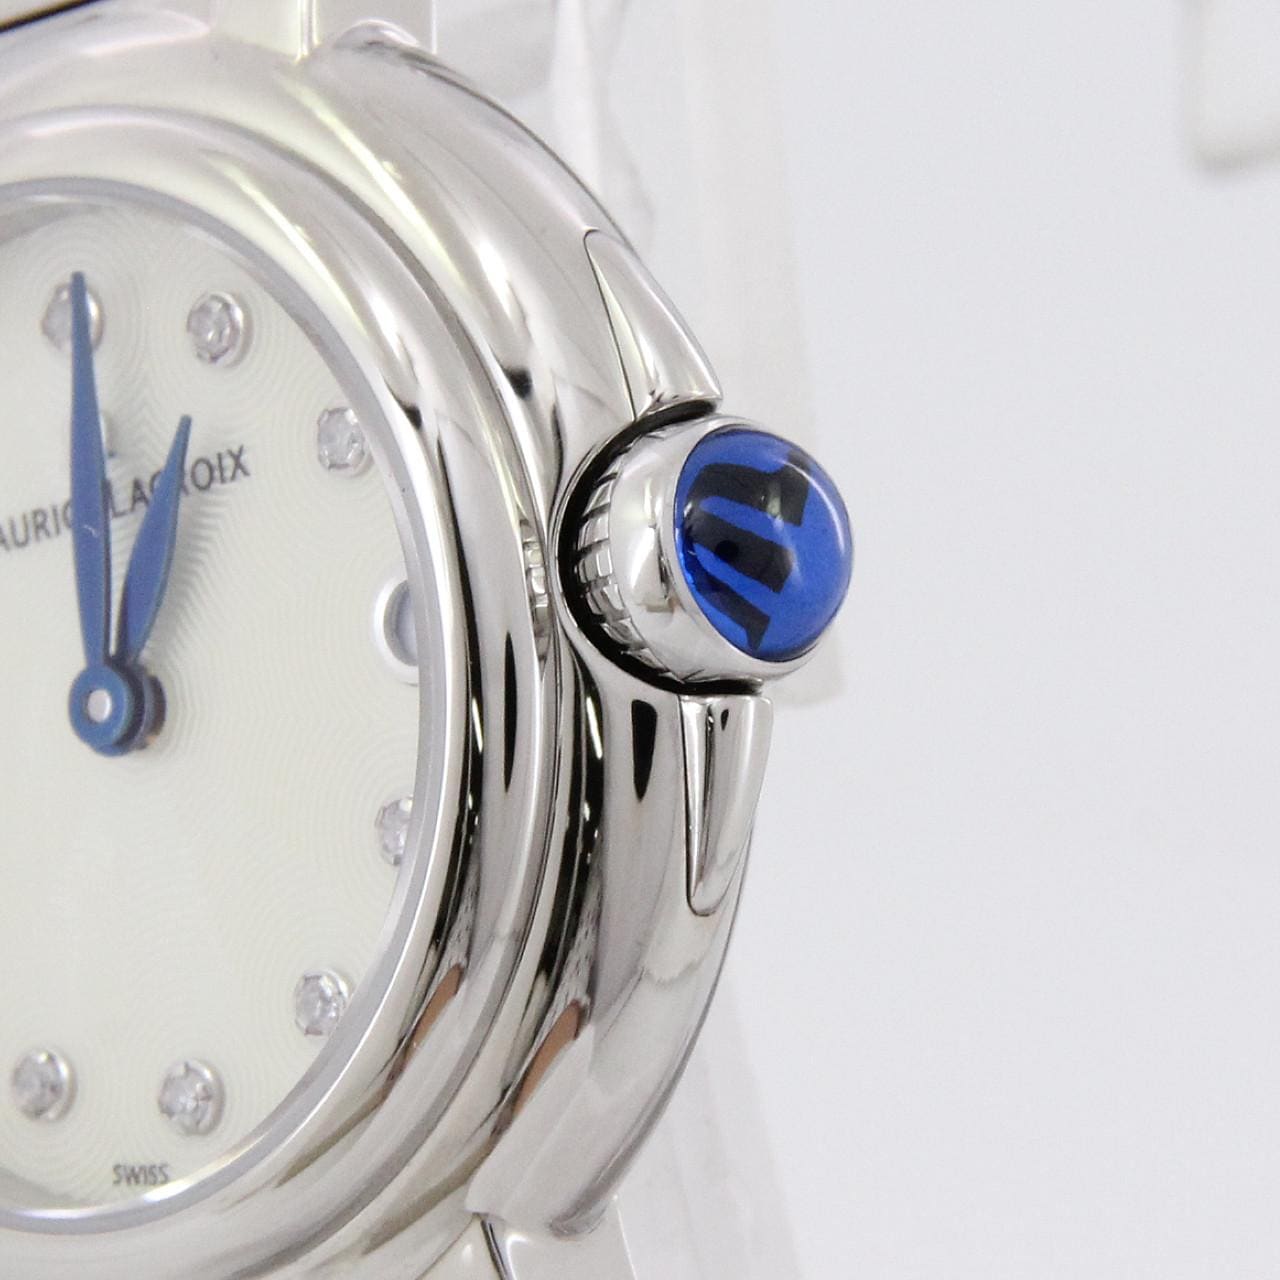 モーリスラクロア FA1003-SS002-170-1 腕時計 レディース